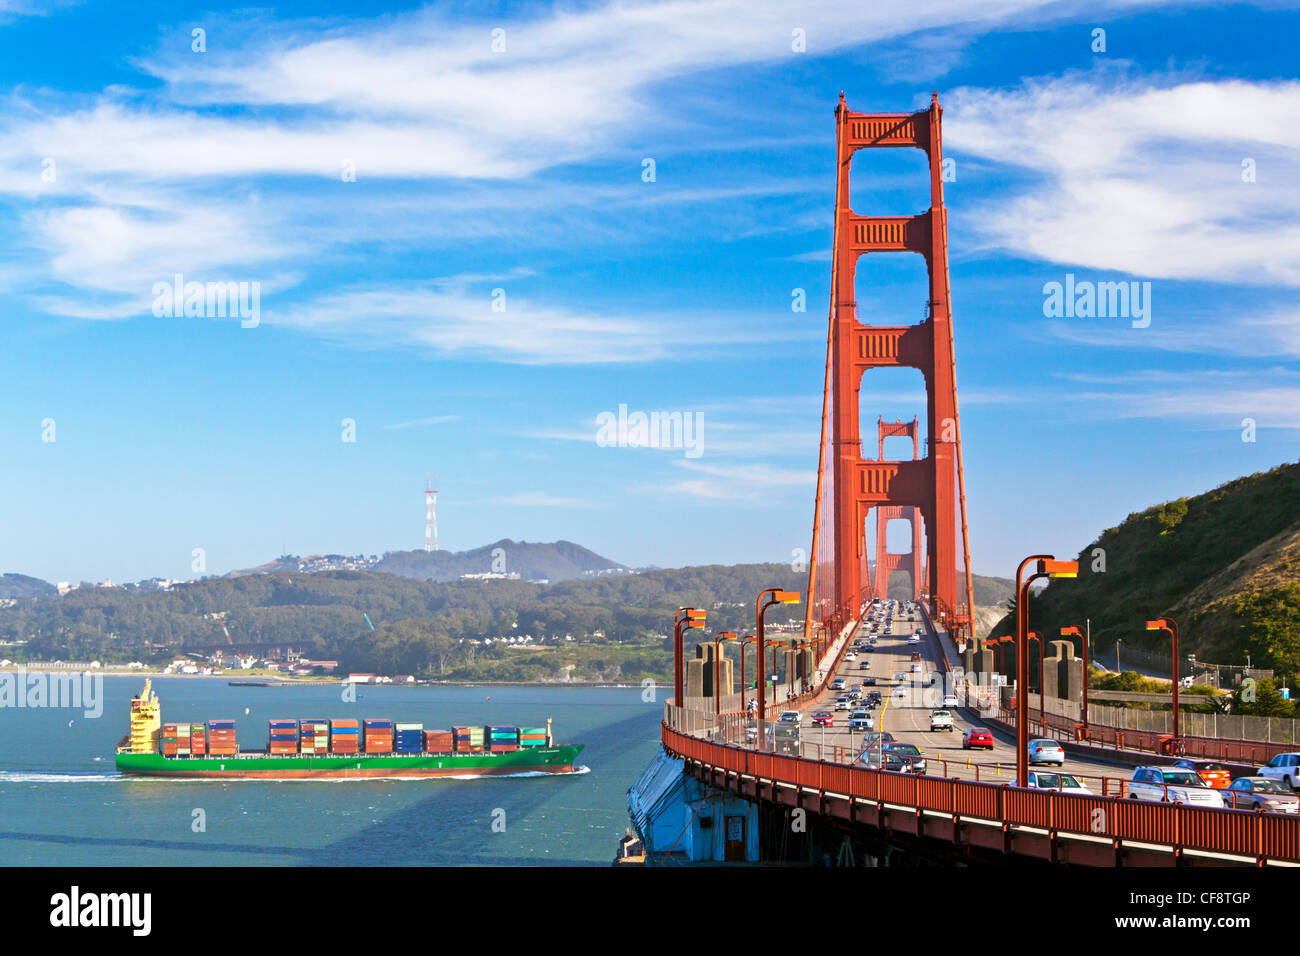 Golden Gate Bridge, San Francisco, California, USA Stock Photo